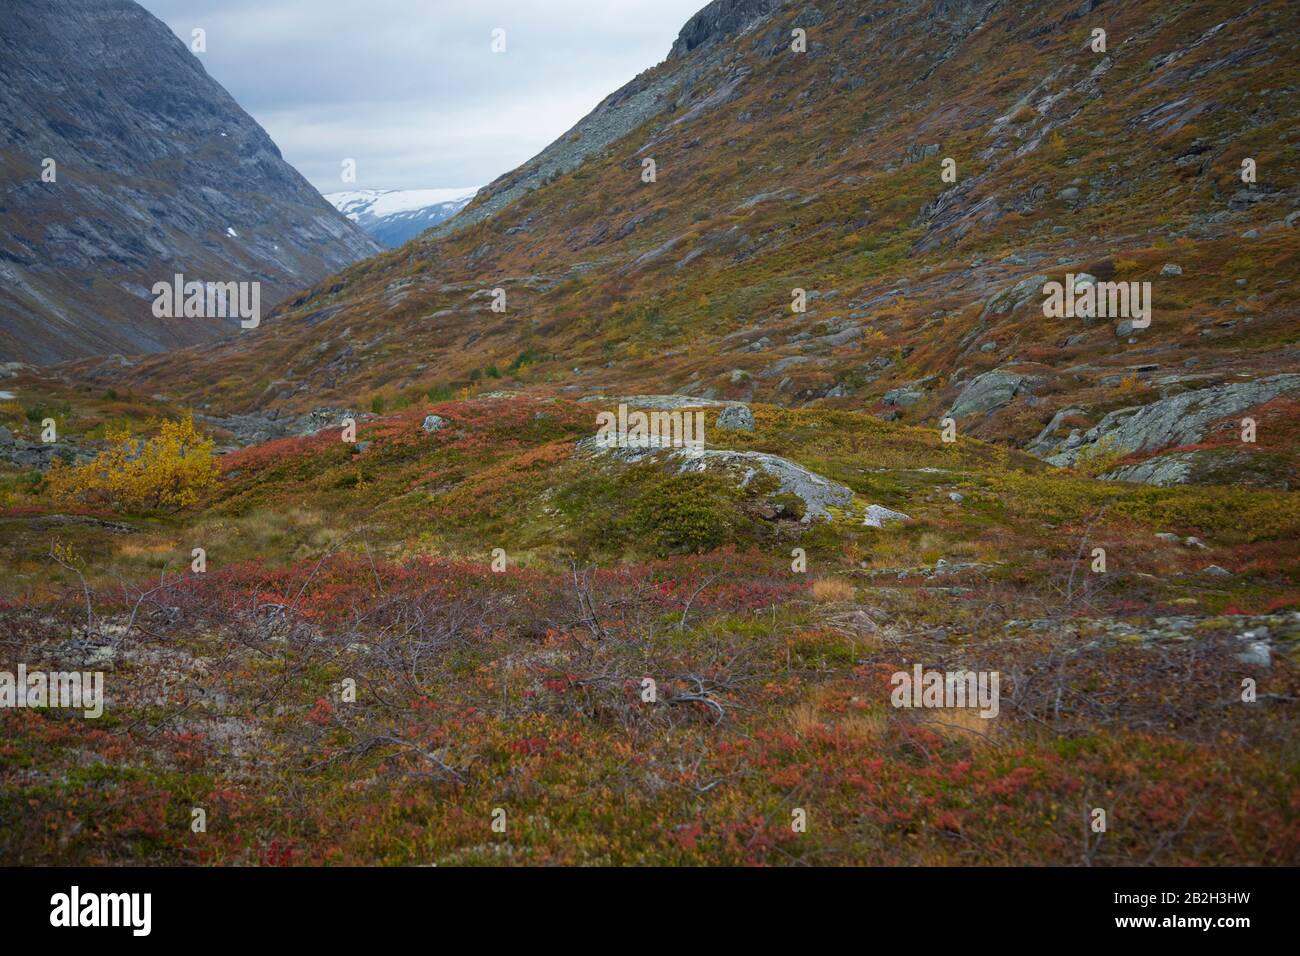 Belles couleurs entourant un petit lac dans les montagnes norvégiennes Banque D'Images